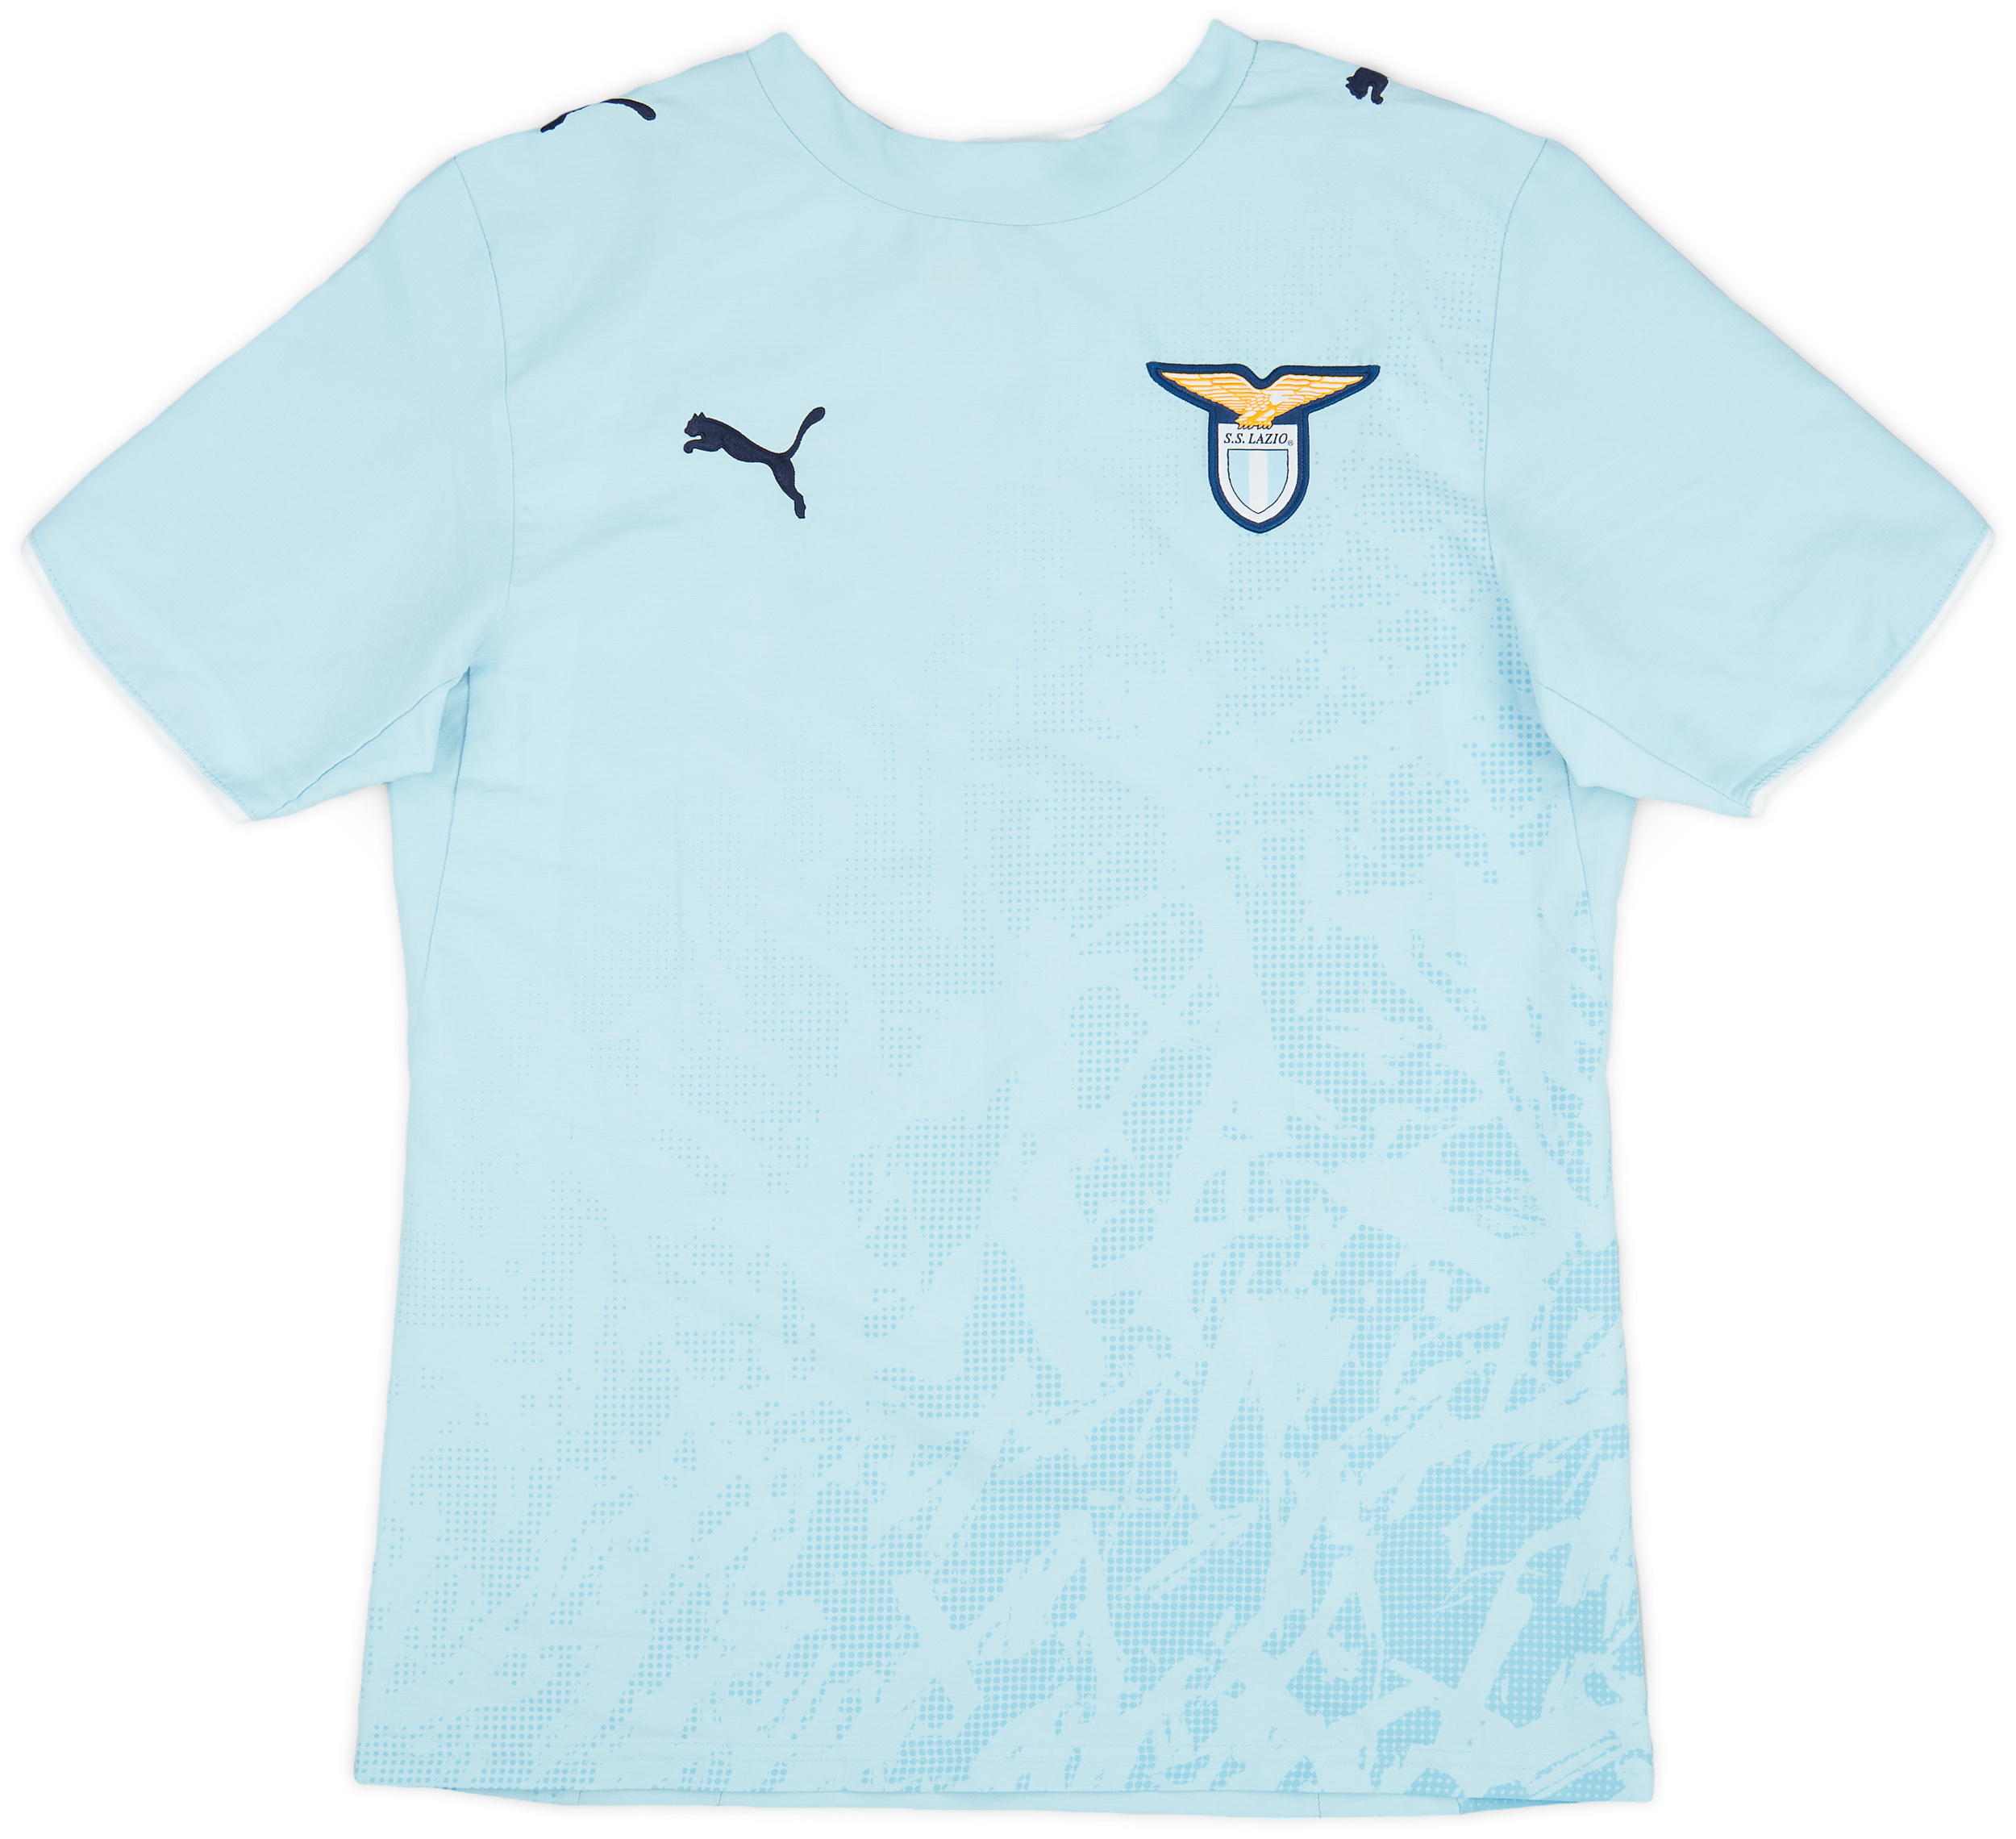 Lazio  home Shirt (Original)